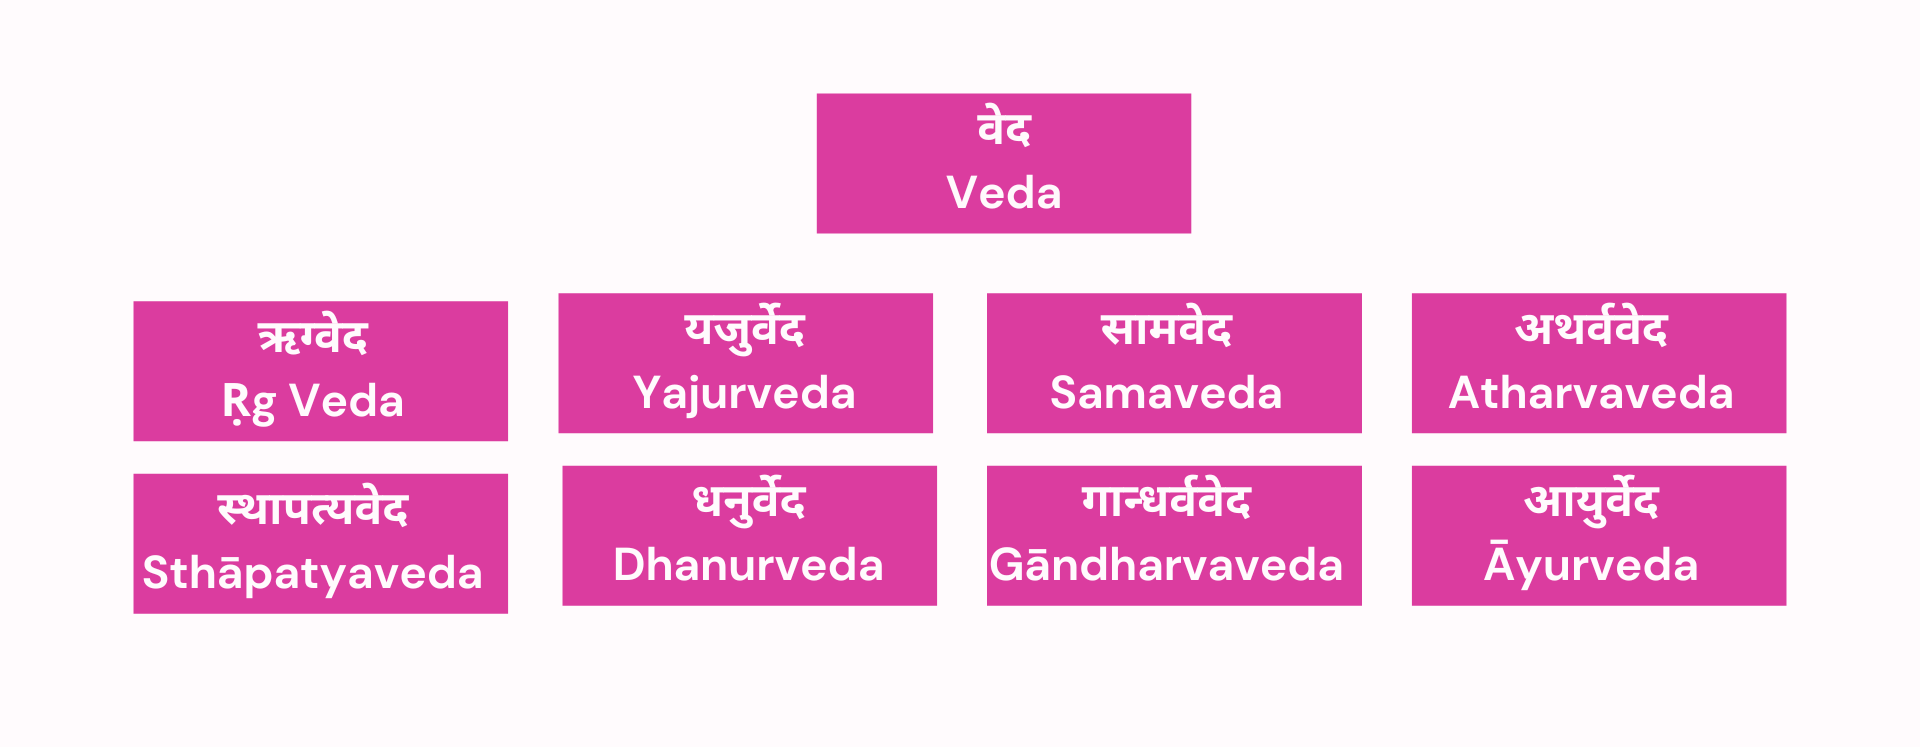 Vedas hierarchy